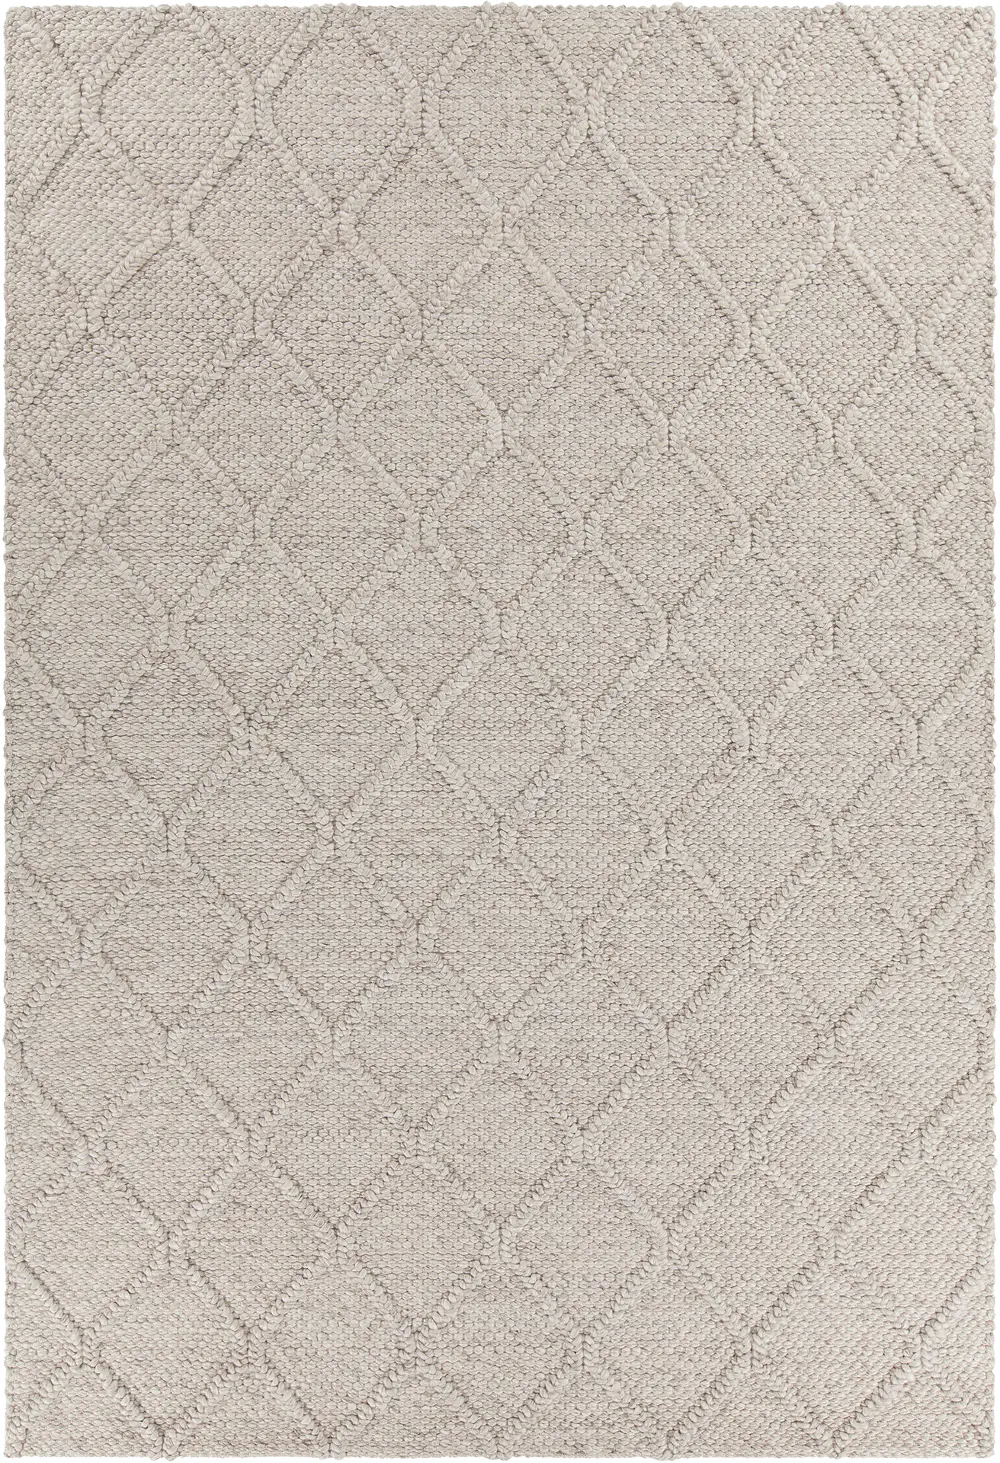 5 x 8 Medium Contemporary Gray Area Rug - Sujan-1